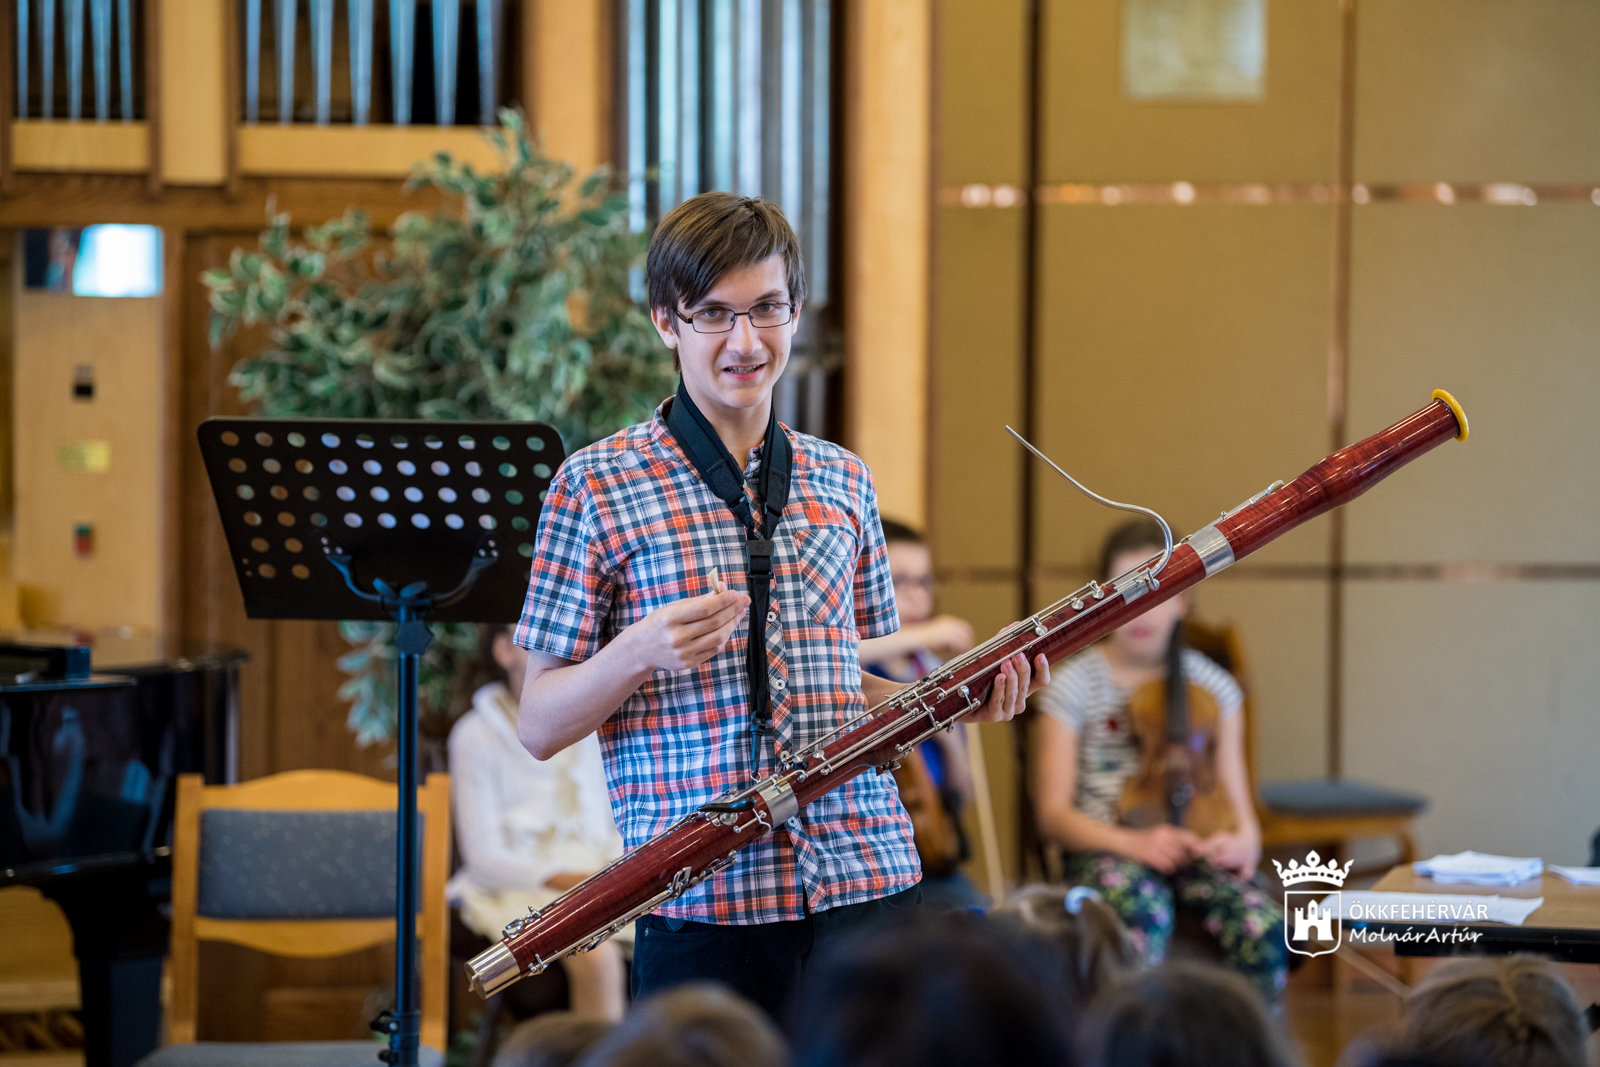 Hangszerbemutató program családoknak szombaton a Szent István Művelődési Házban